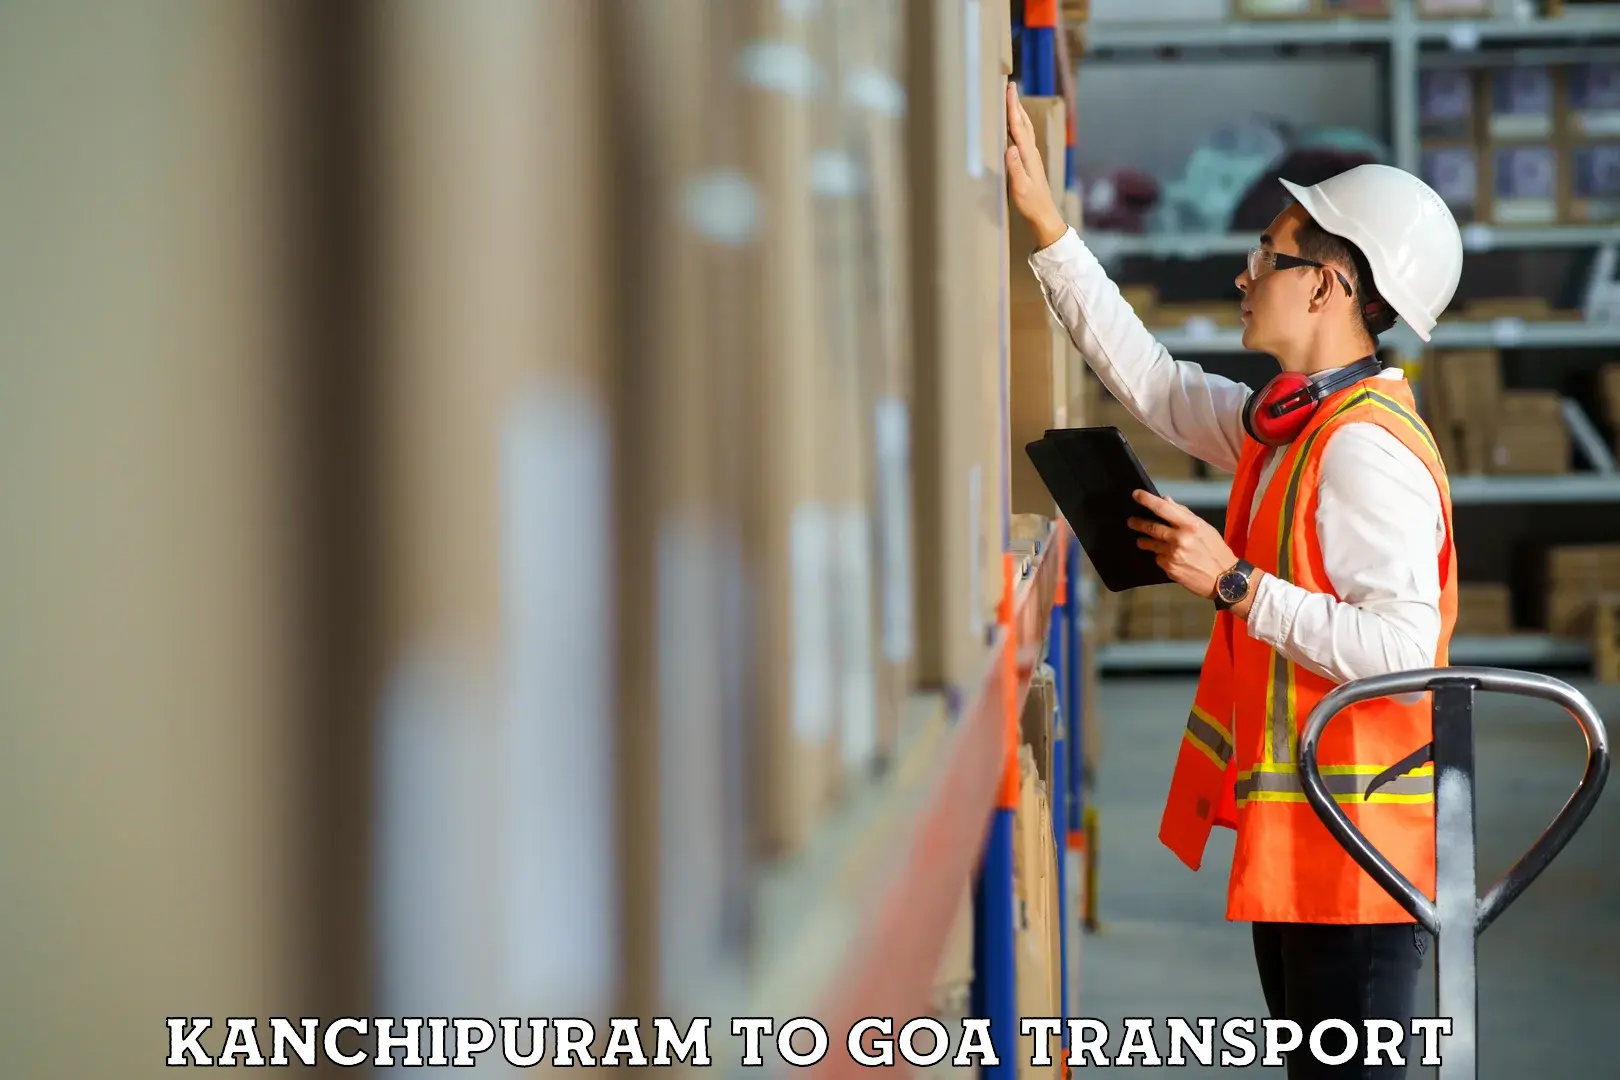 Transport shared services Kanchipuram to Goa University